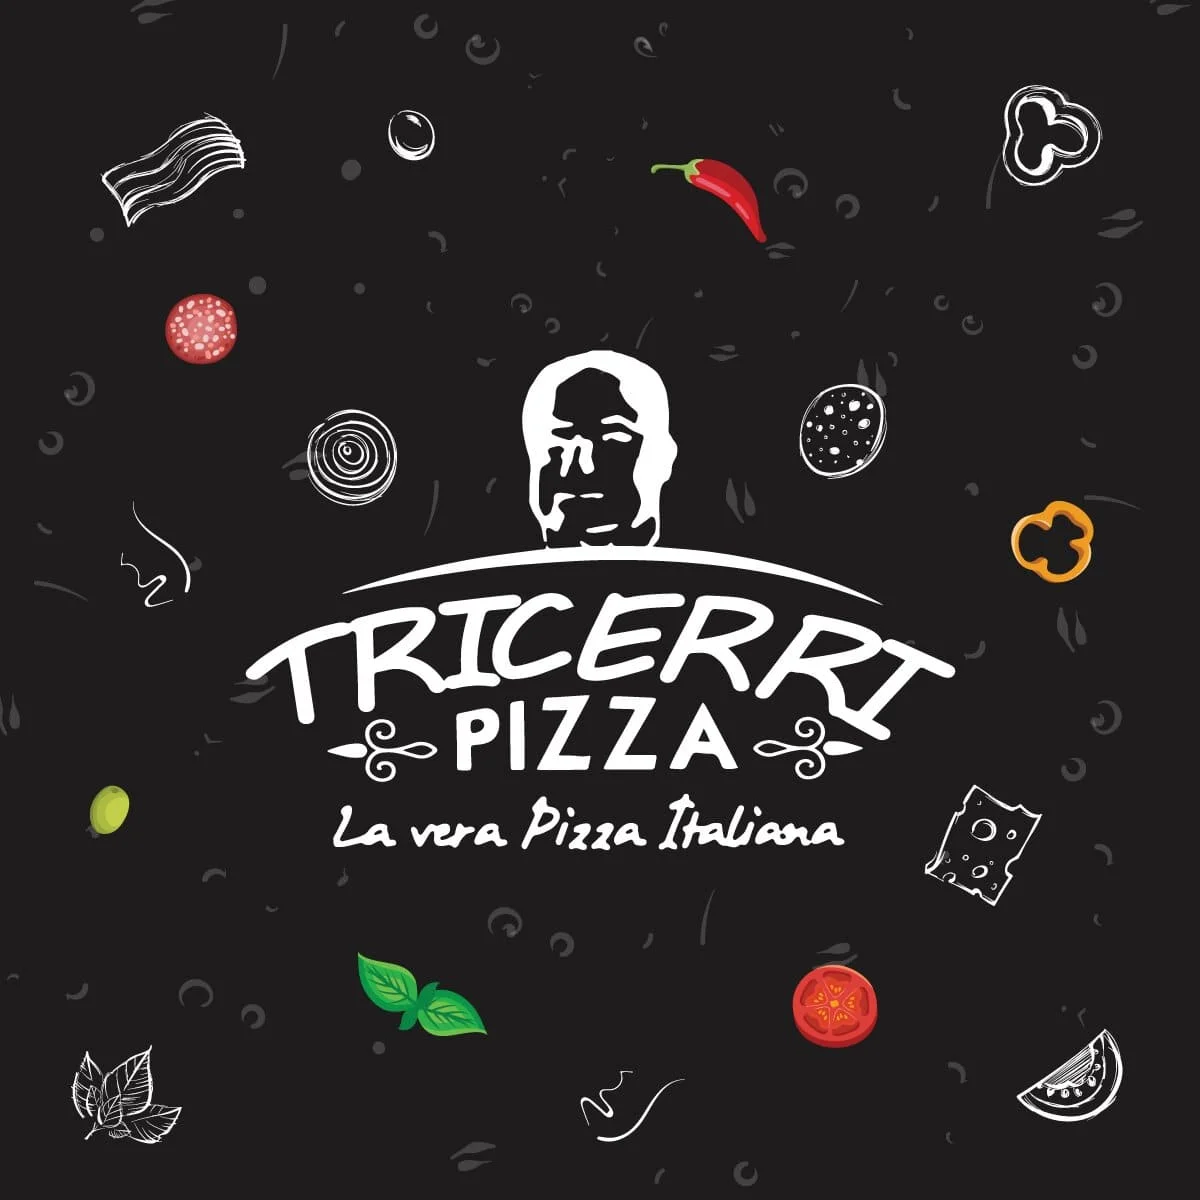 Restaurantes-tricerri-pizza-20001